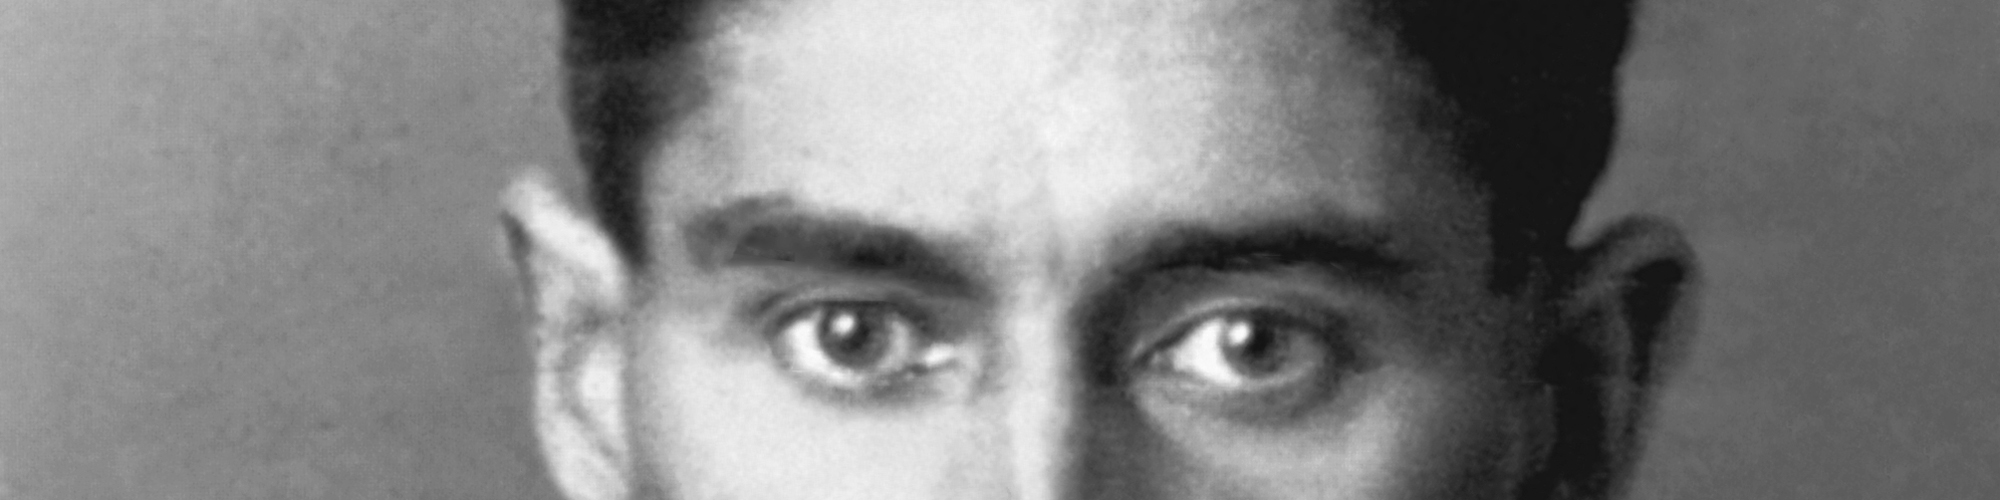 schwarz/weiß-Foto von Franz Kafka, Augenpartie